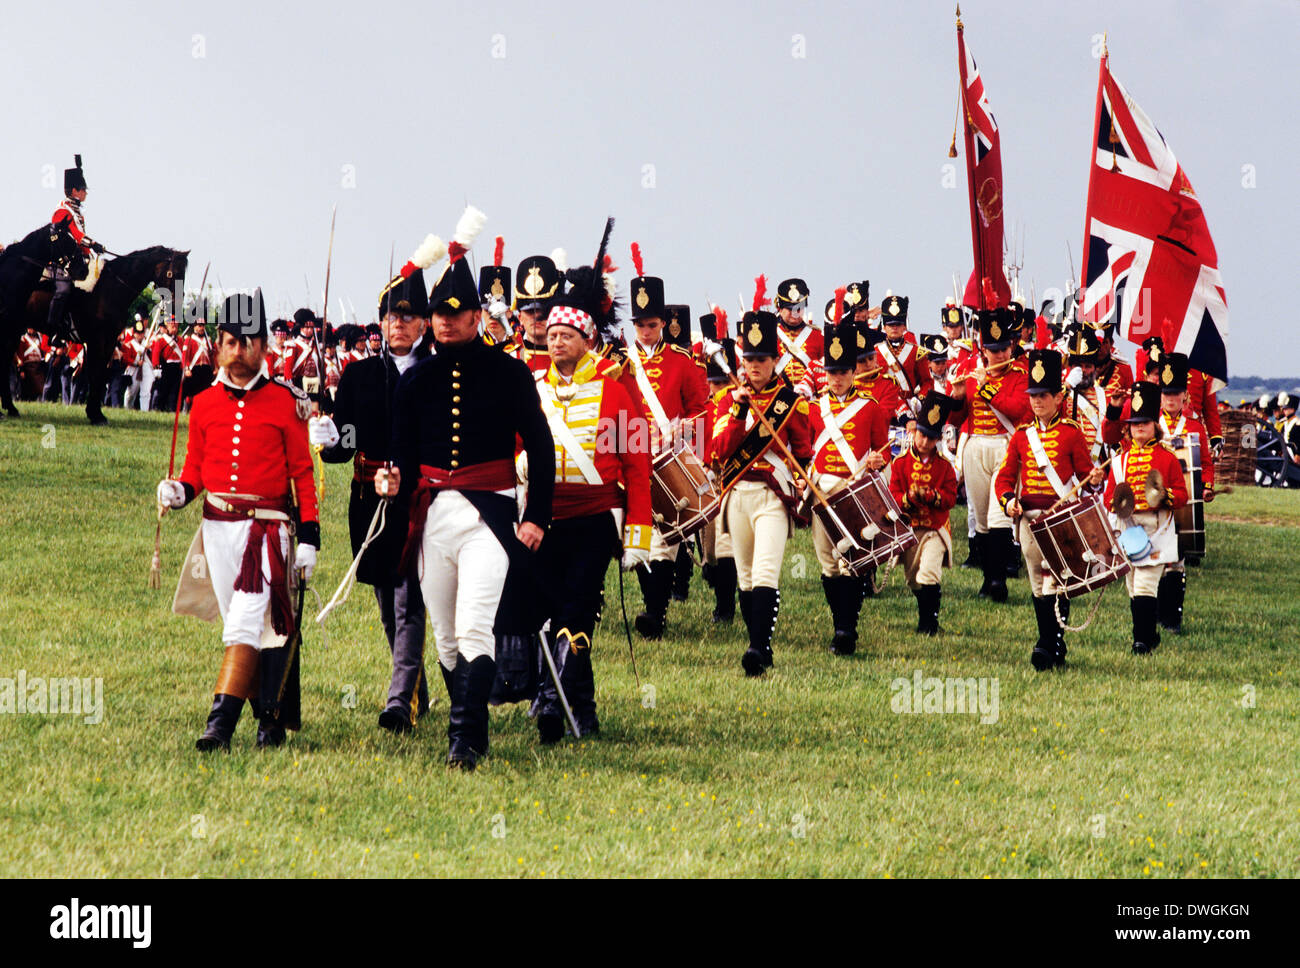 Régiment britannique au moment de la bataille de Waterloo 1815, marcher au pied, Union Jack Flag, reconstitution de l'armée soldat uniformes uniforme England UK Banque D'Images